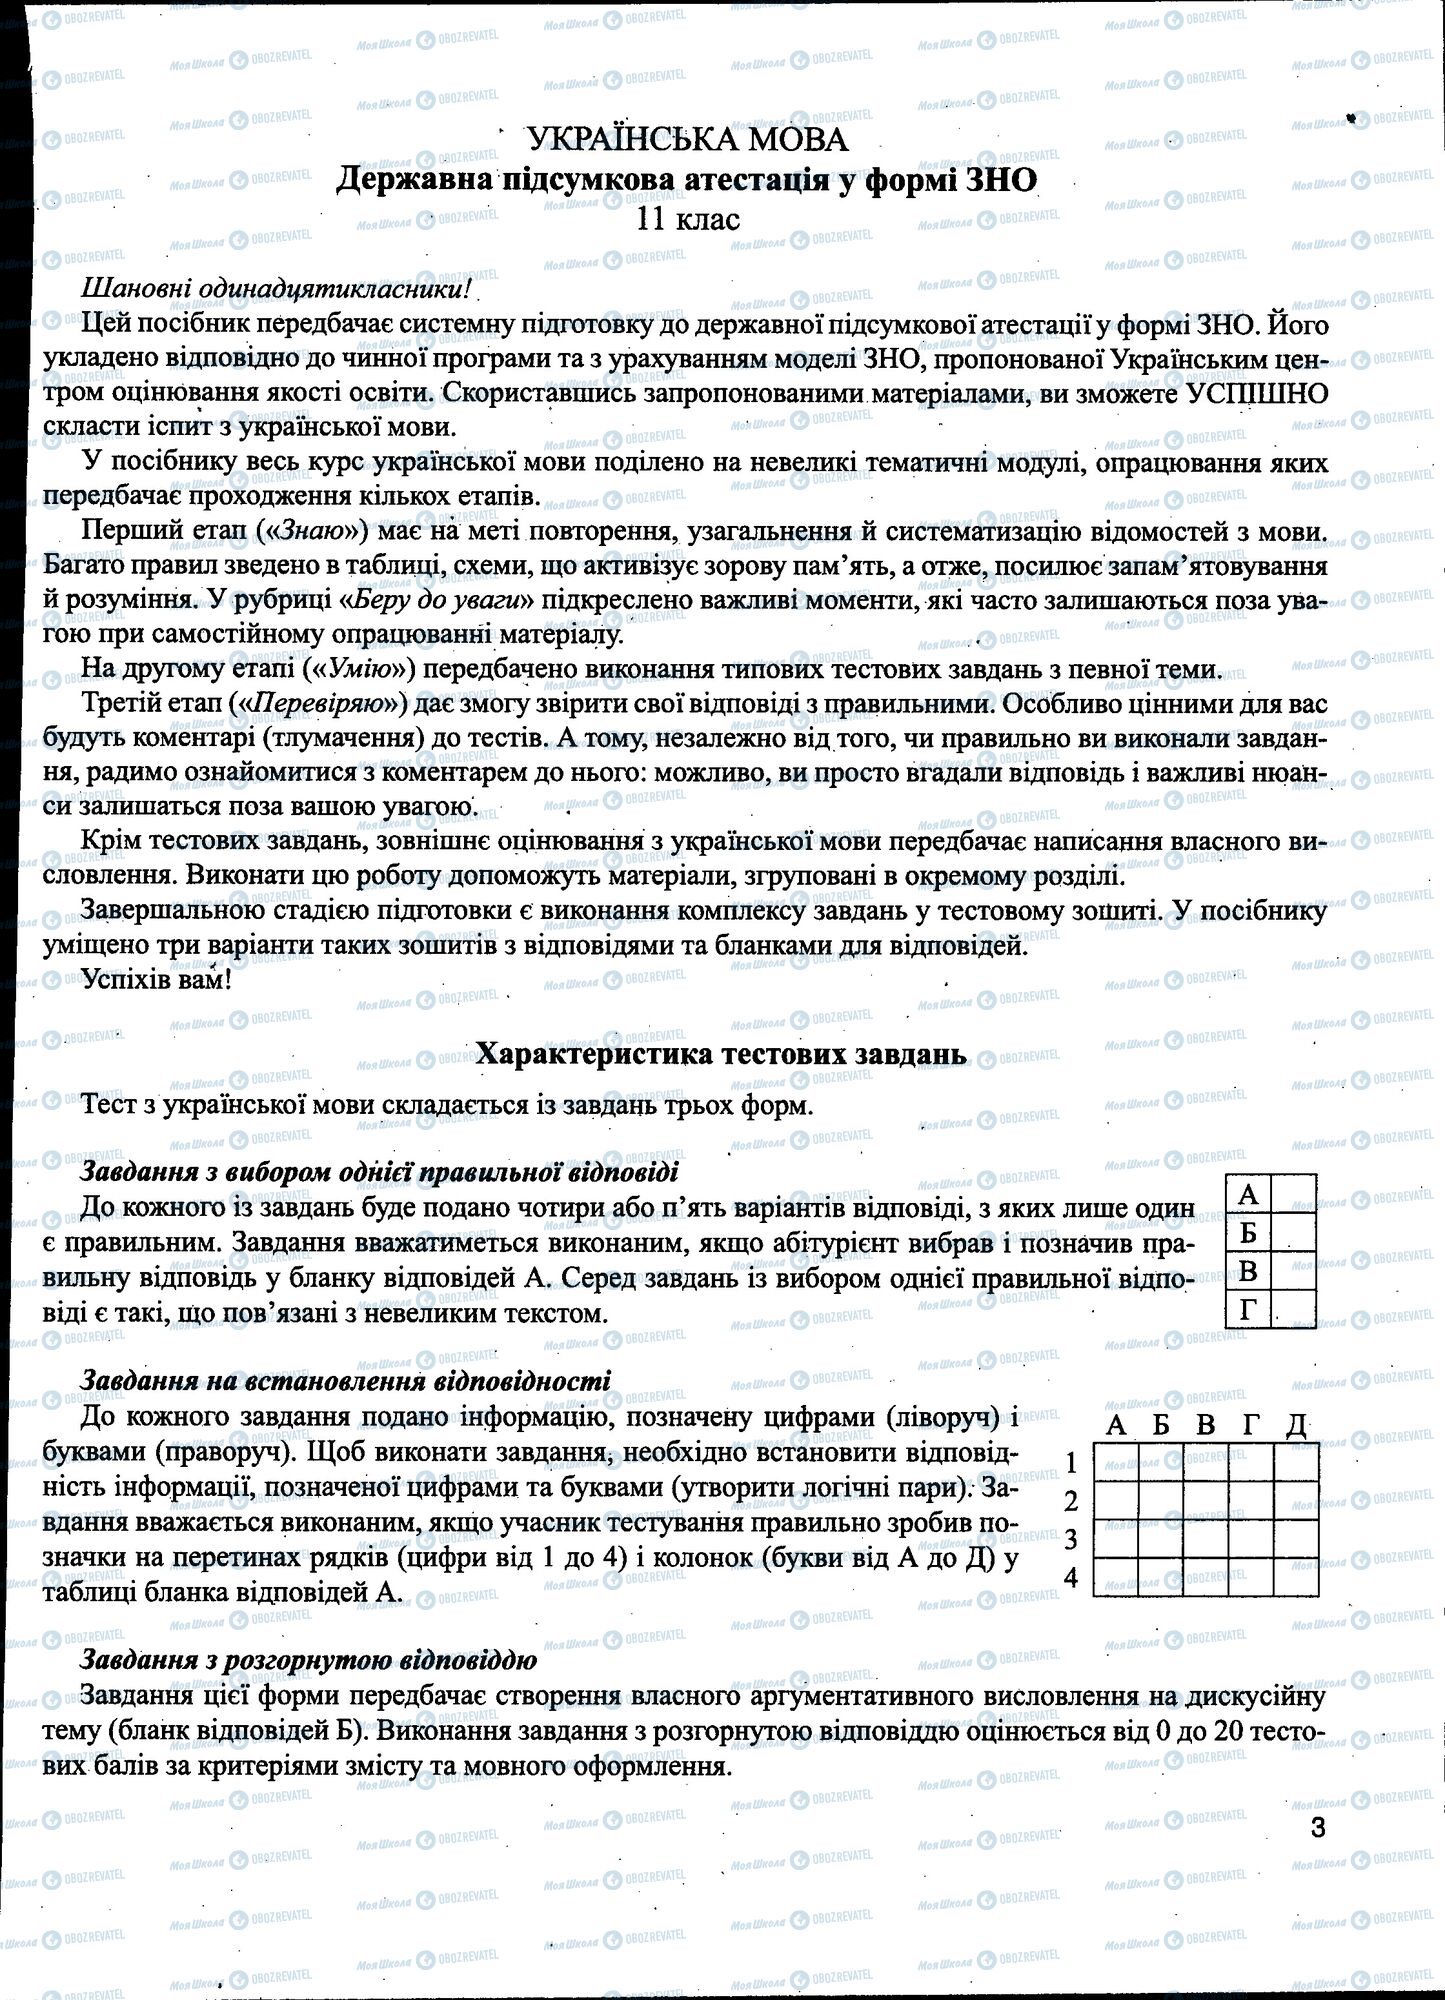 ДПА Укр мова 11 класс страница 003